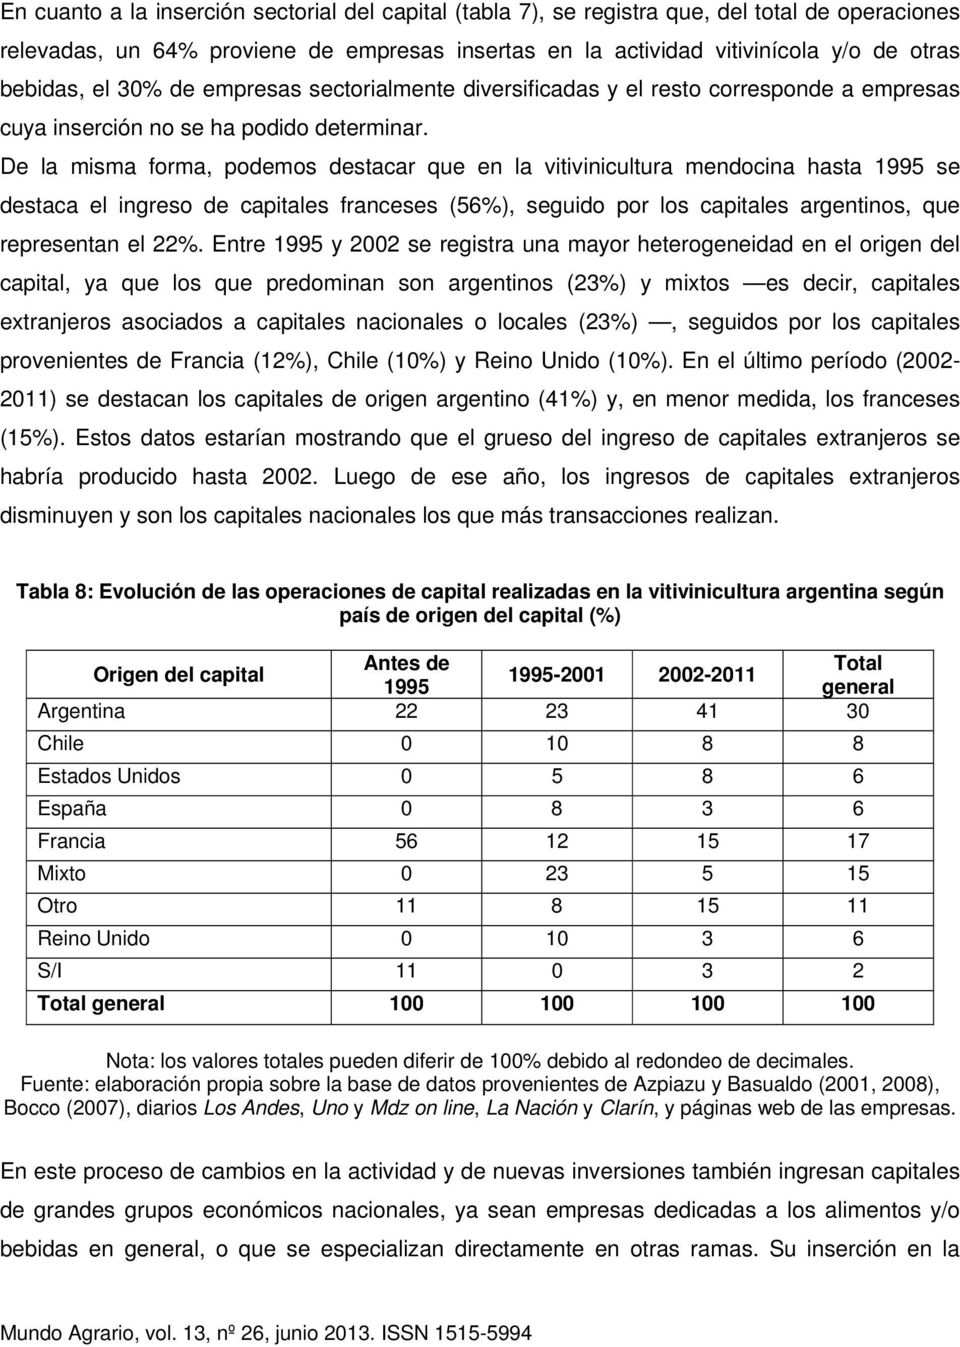 De la misma forma, podemos destacar que en la vitivinicultura mendocina hasta 1995 se destaca el ingreso de capitales franceses (56%), seguido por los capitales argentinos, que representan el 22%.